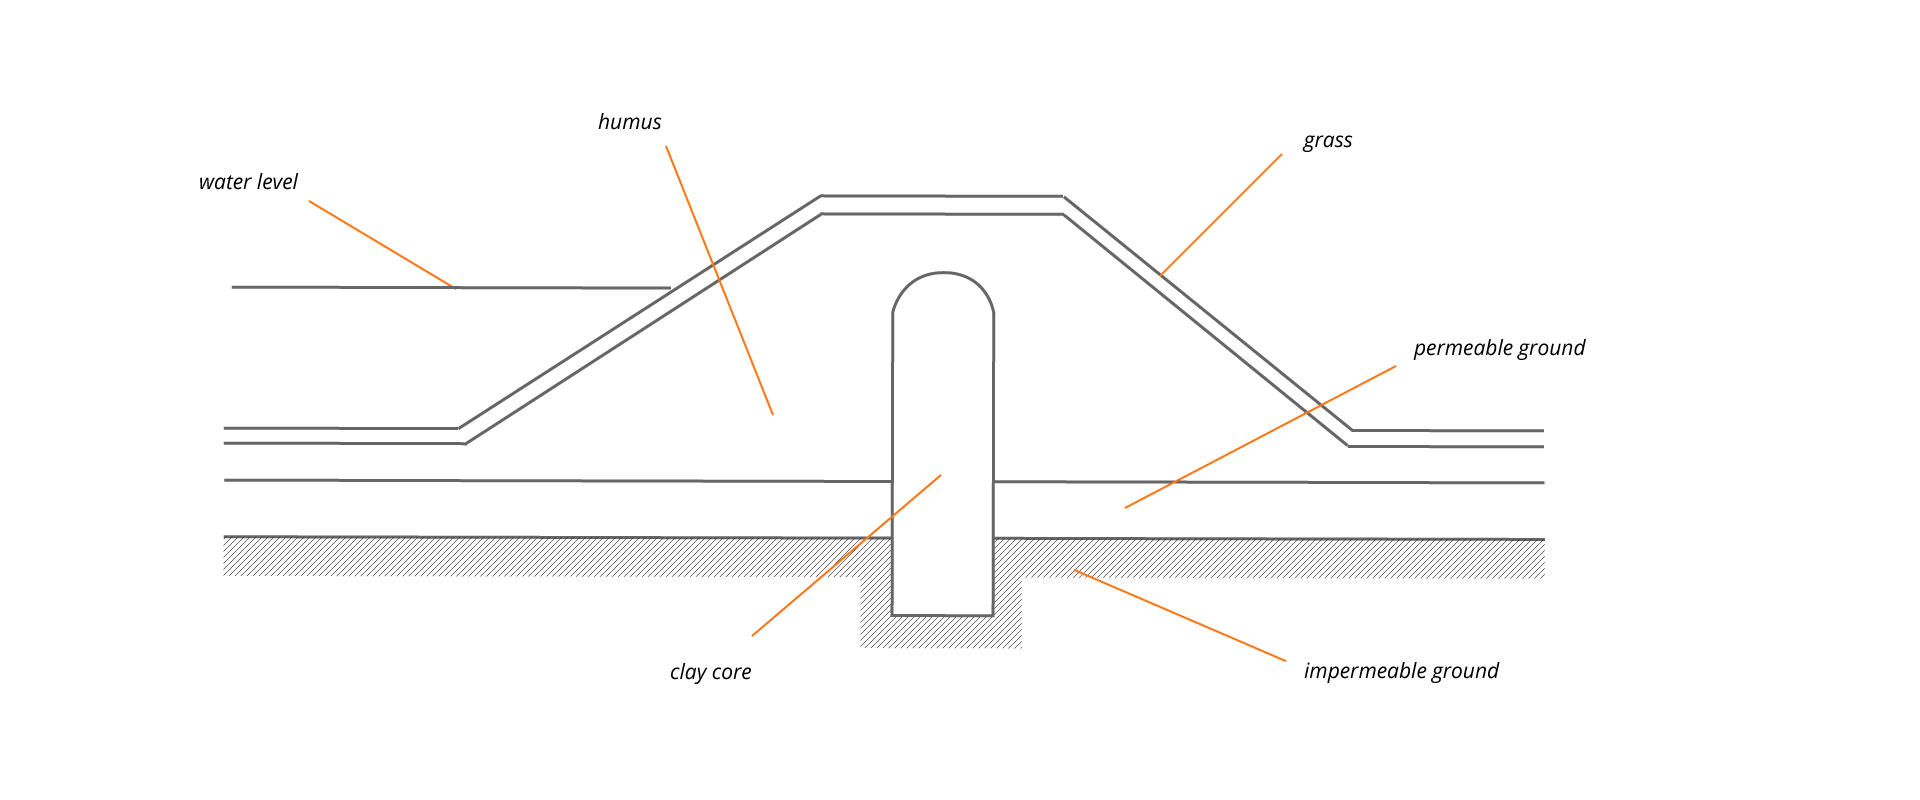 Ilustracja przedstawia przekrój przez typowy staw, przykład 3.